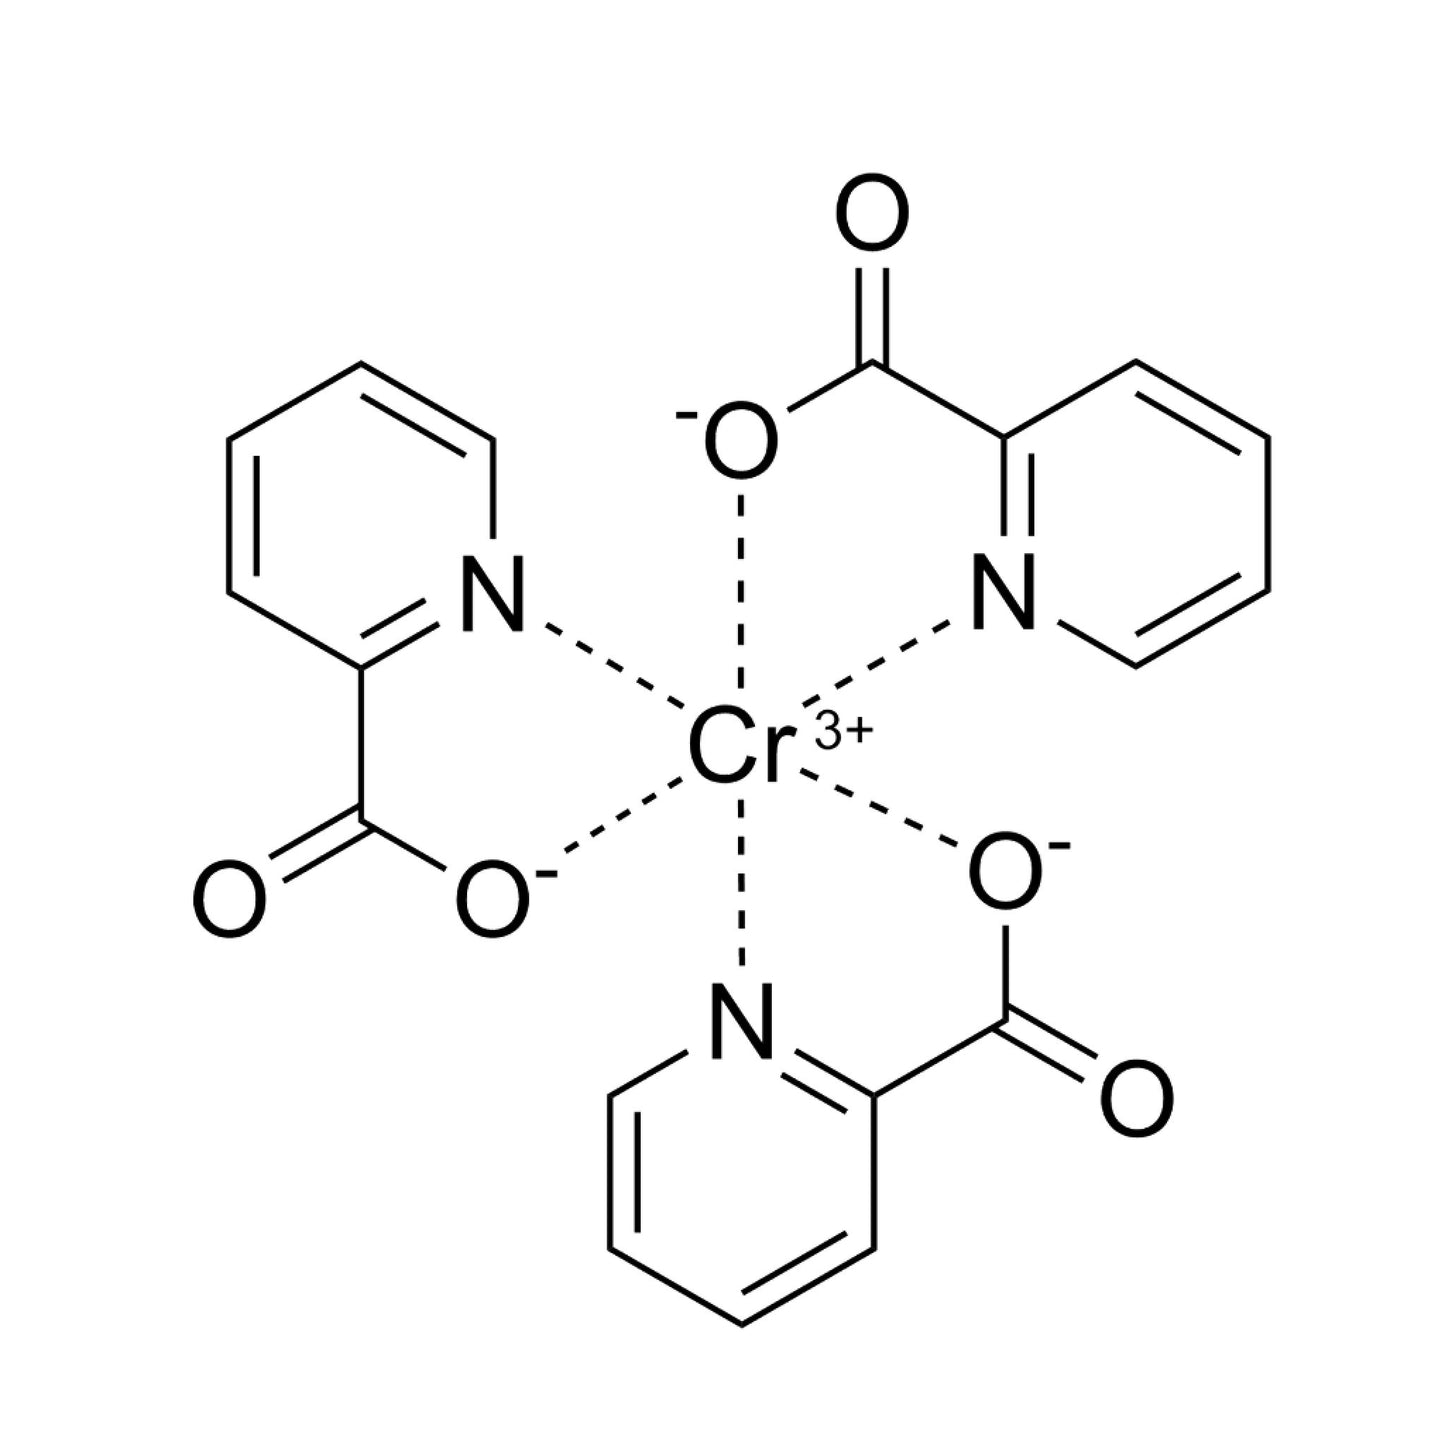 4 Chromium Picolinate - Maximum Daily Dosage 200 mcg- Four Ingredients